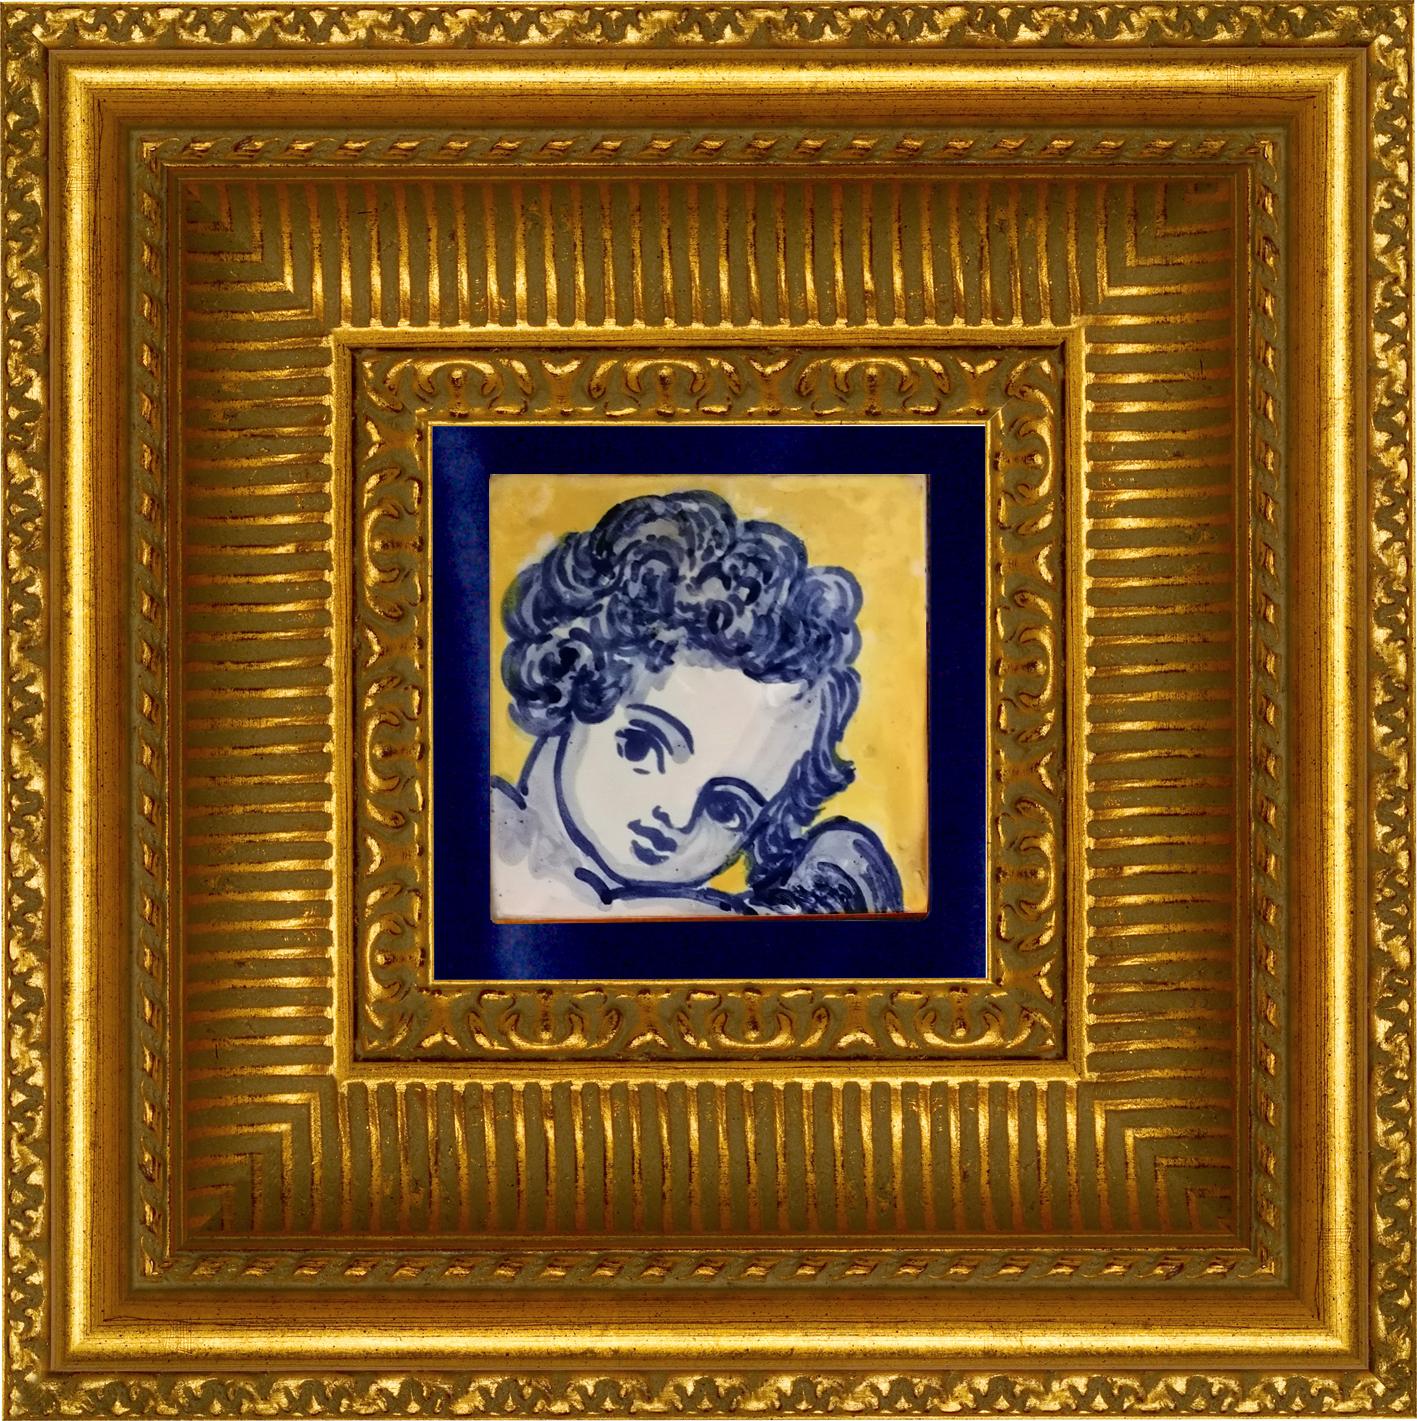 Magnifique chérubin ou ange baroque peint à la main en bleu, style 18ème siècle, carreau de céramique portugais/azulejo
Les carreaux peints en bleu de cobalt sur fond blanc dans le Portugal typique du XVIIIe siècle ont donné le goût des applications